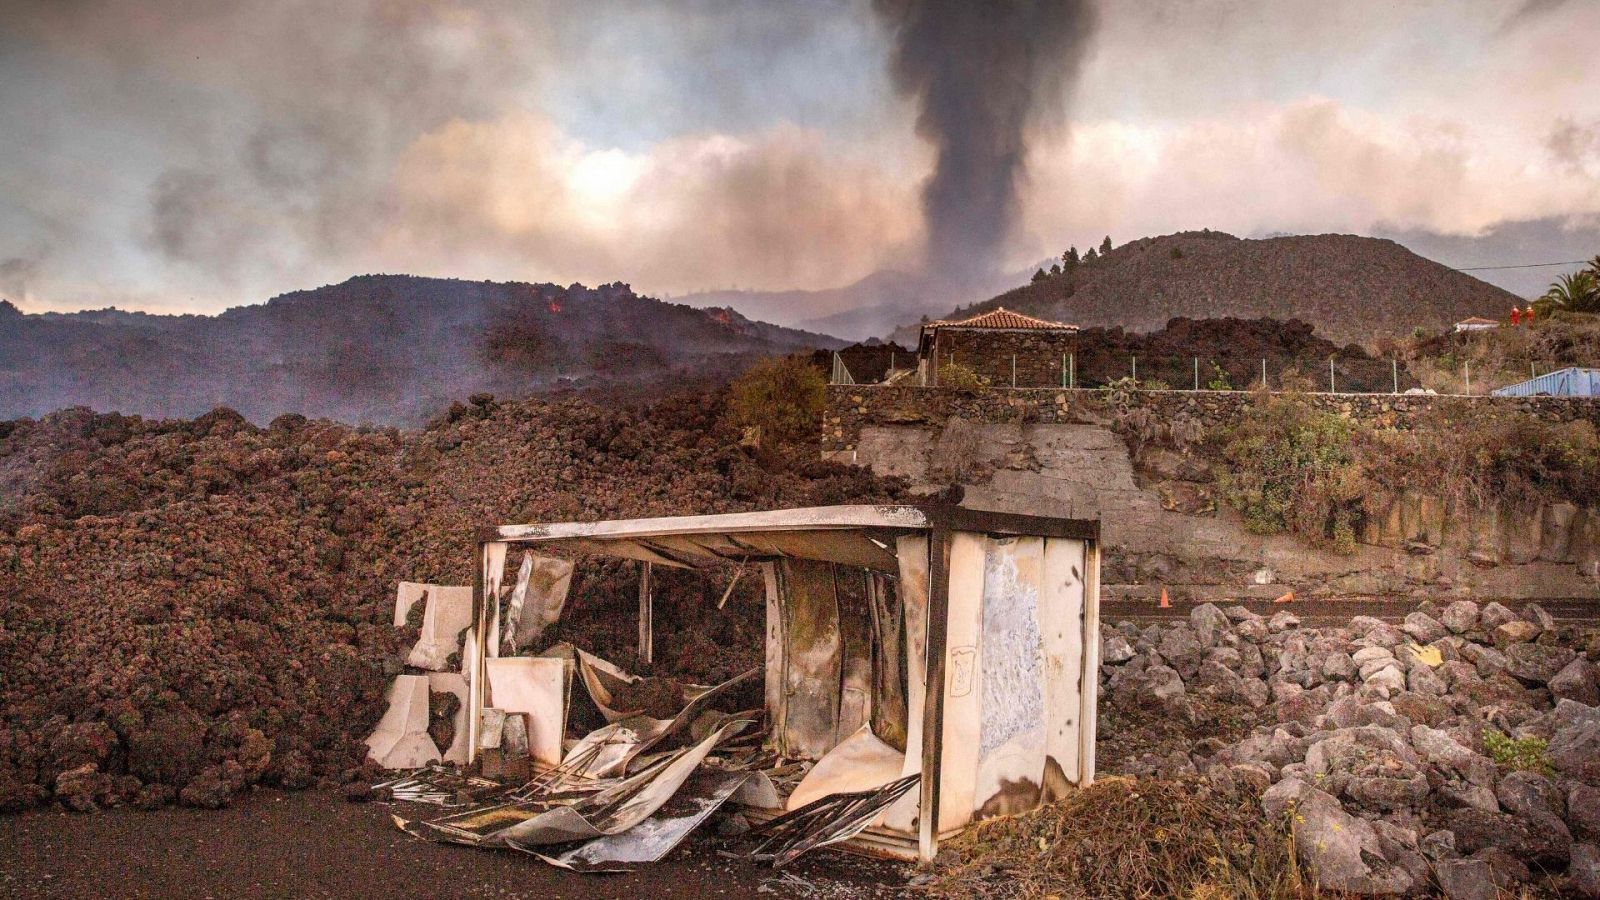 Los vecinos de La Palma: "No sé que voy a hacer si mi casa se ha destruido"